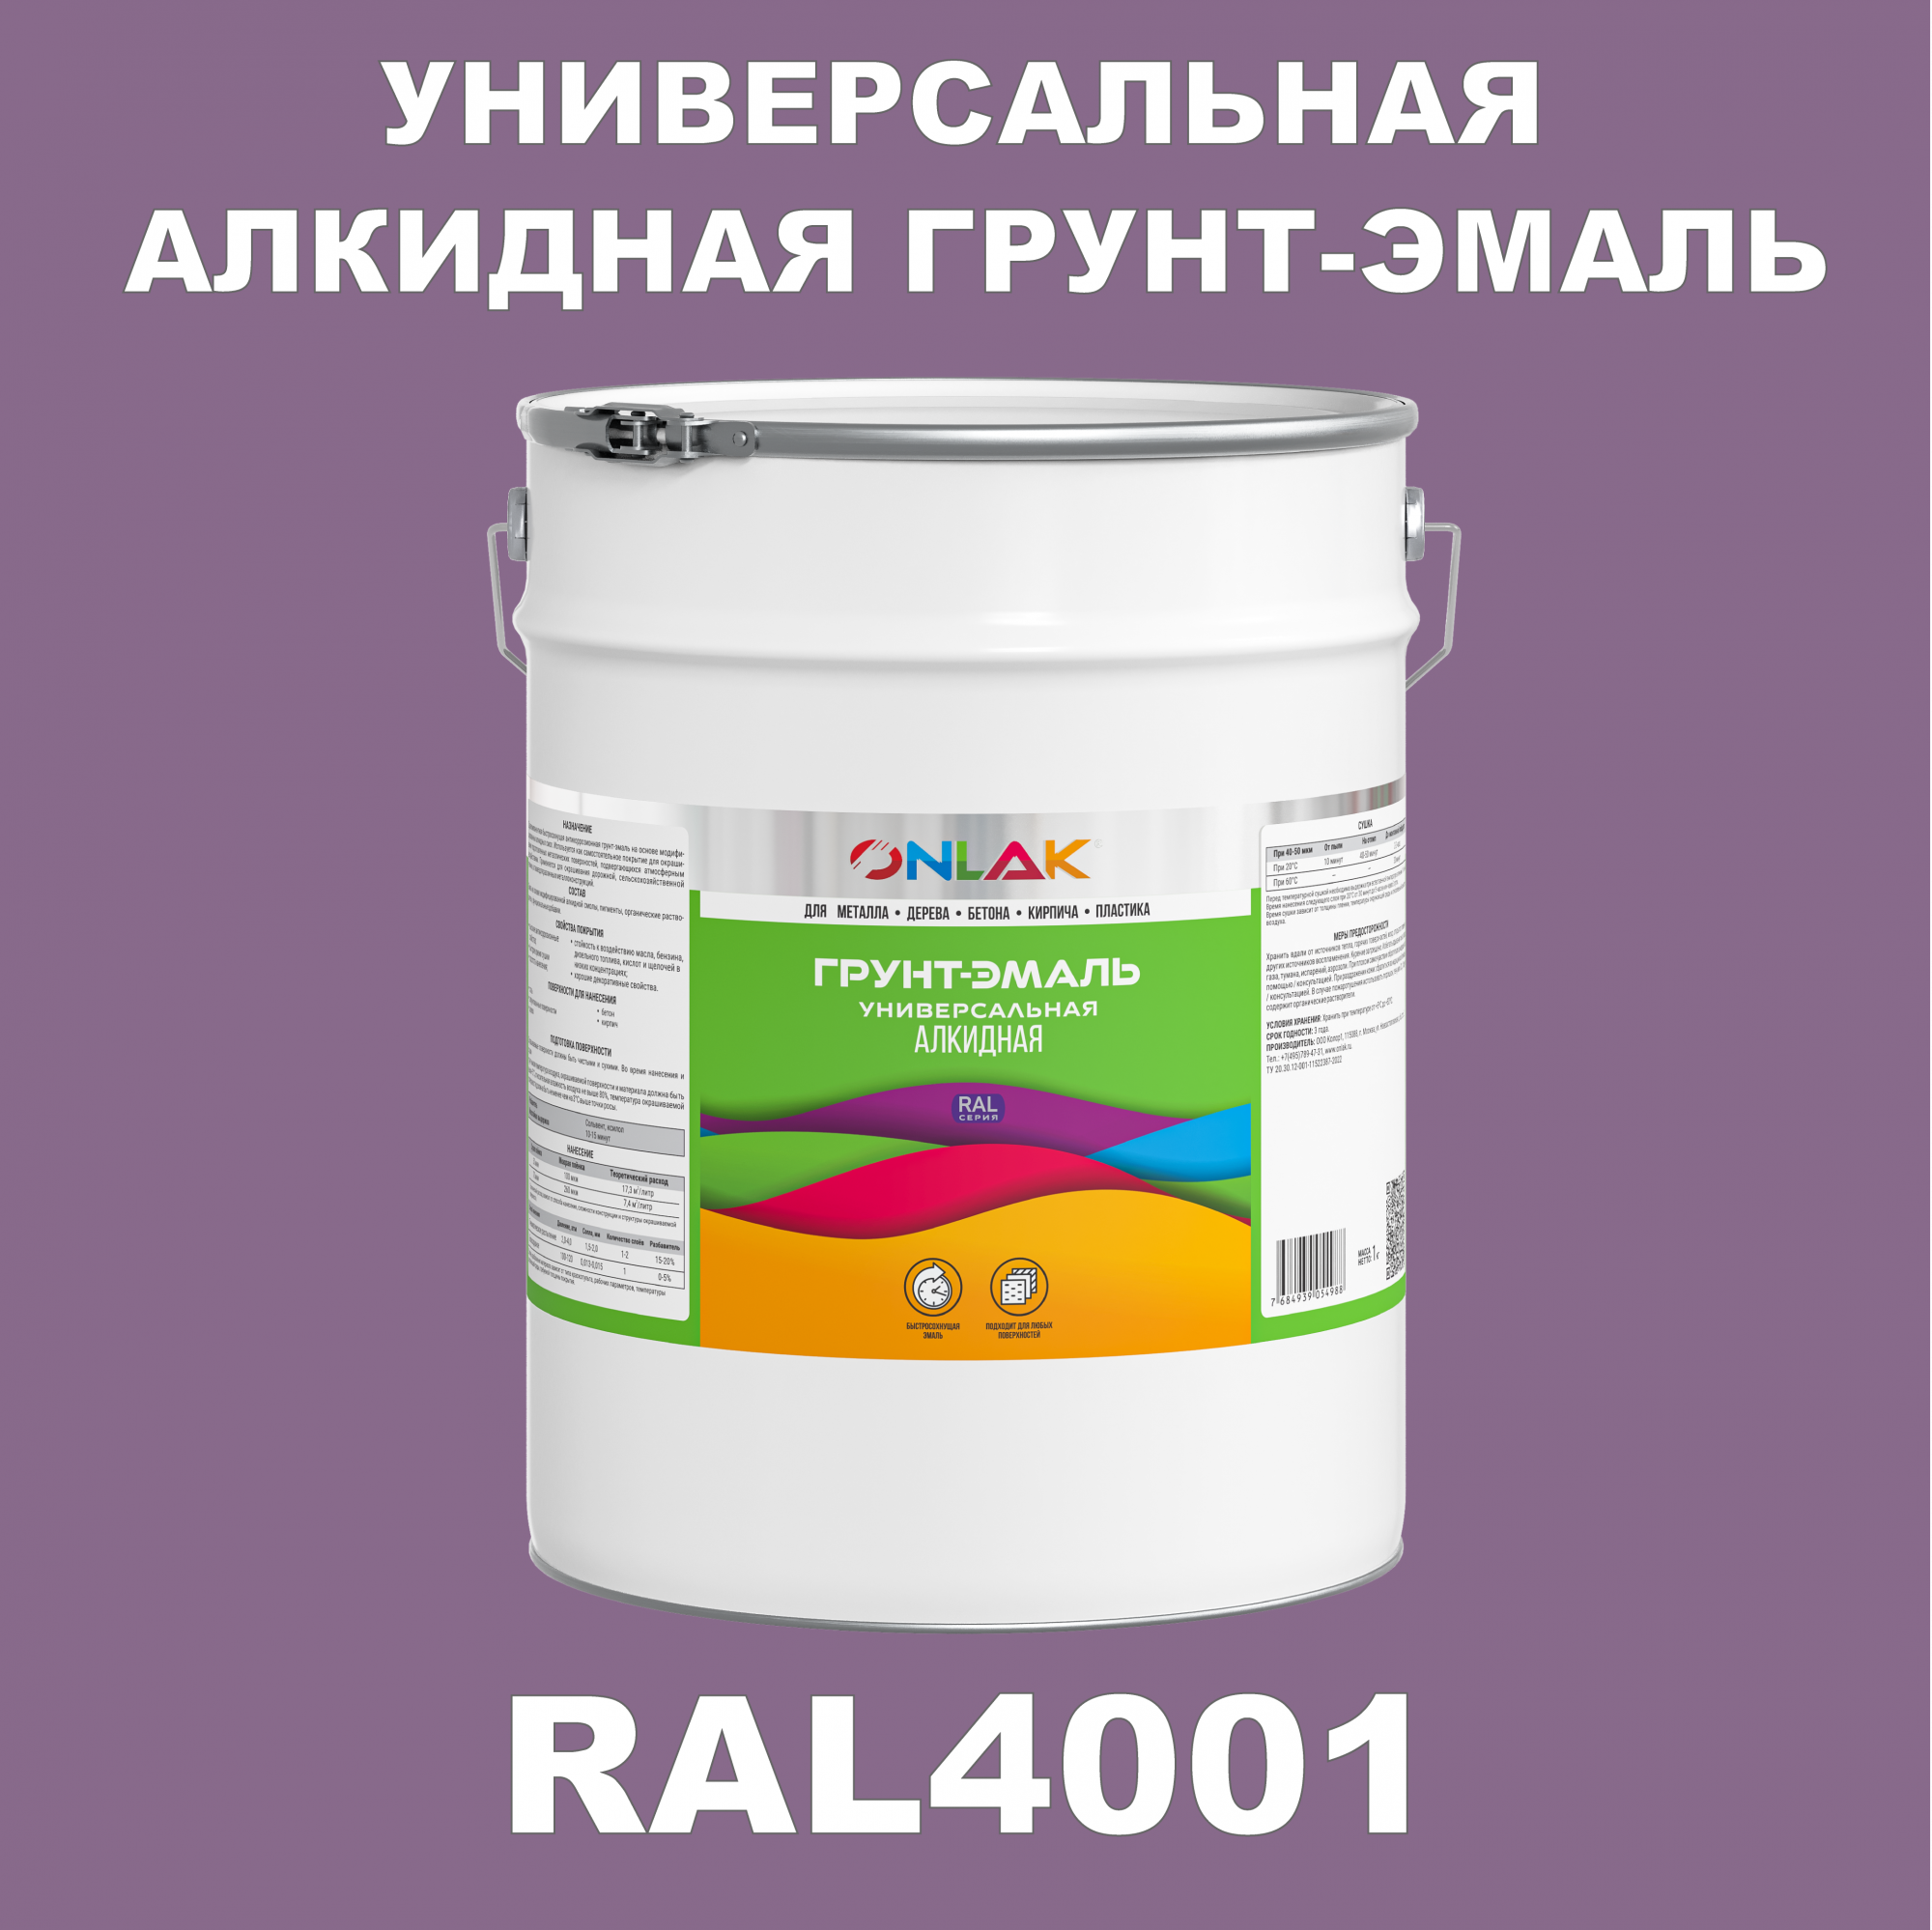 Грунт-эмаль ONLAK 1К RAL4001 антикоррозионная алкидная по металлу по ржавчине 20 кг антикоррозионная грунт эмаль onlak ral 4003 фиолетовый 542 мл